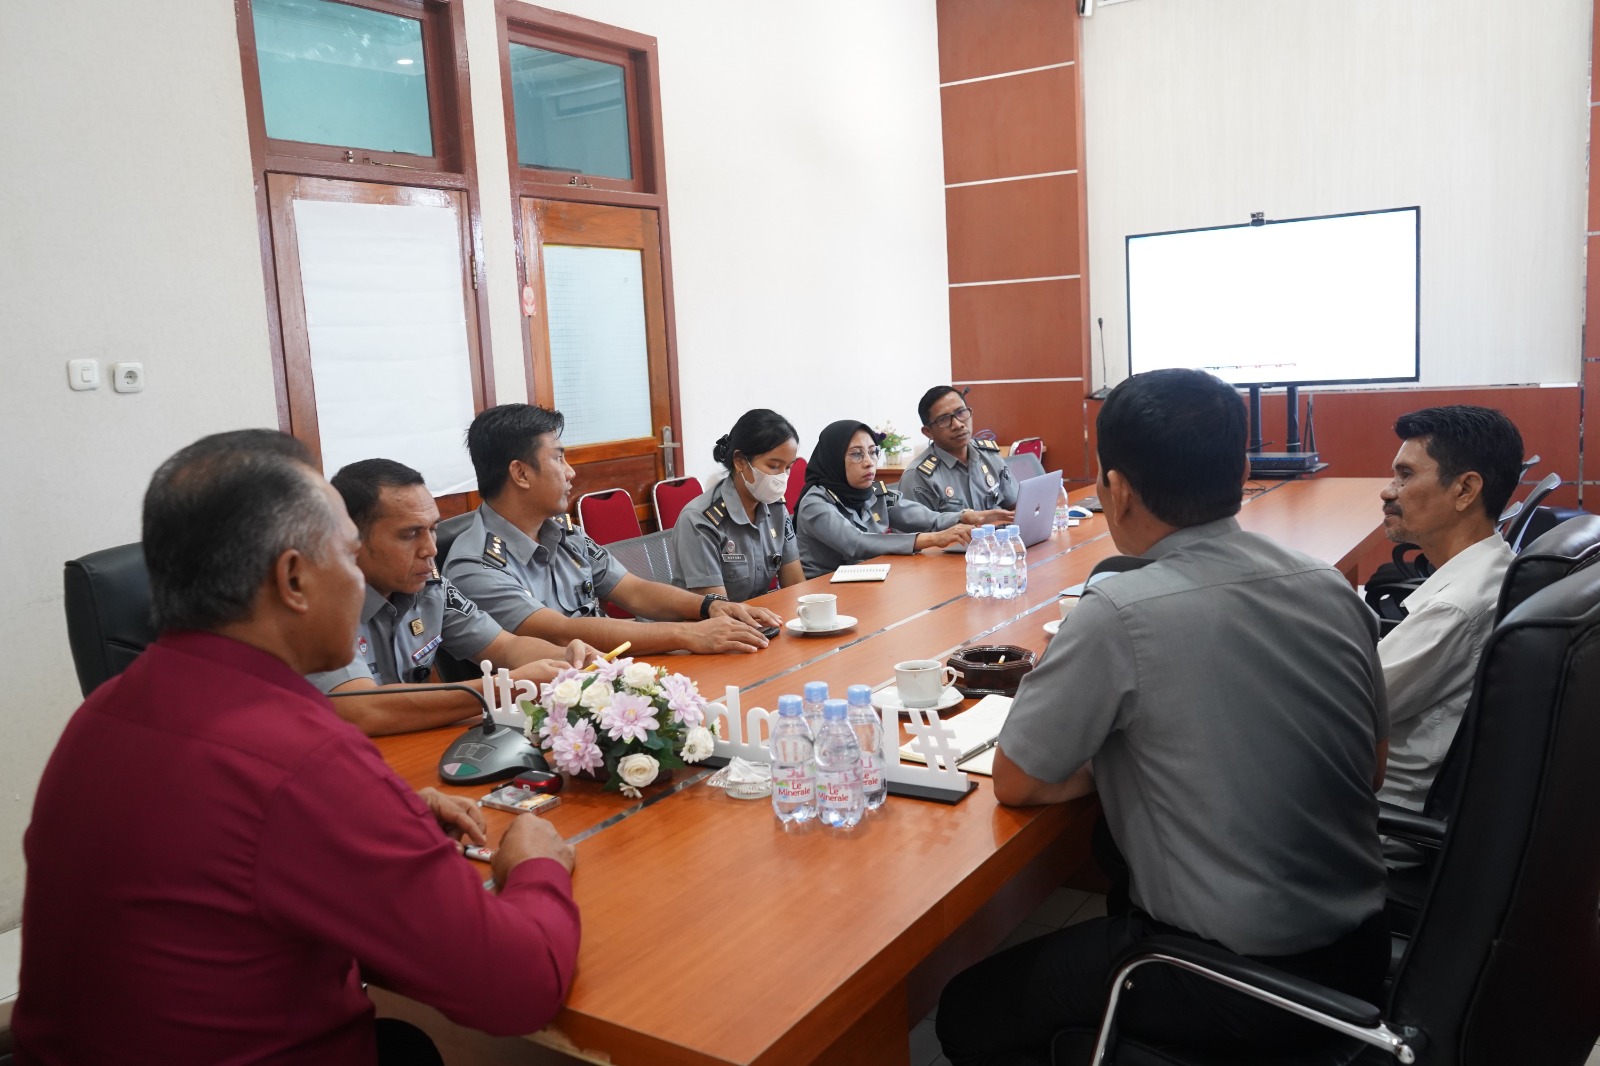 Kakanwil Maluku Utara, M. Adnan pimpin rapat renovasi gedung (dok. istimewa)